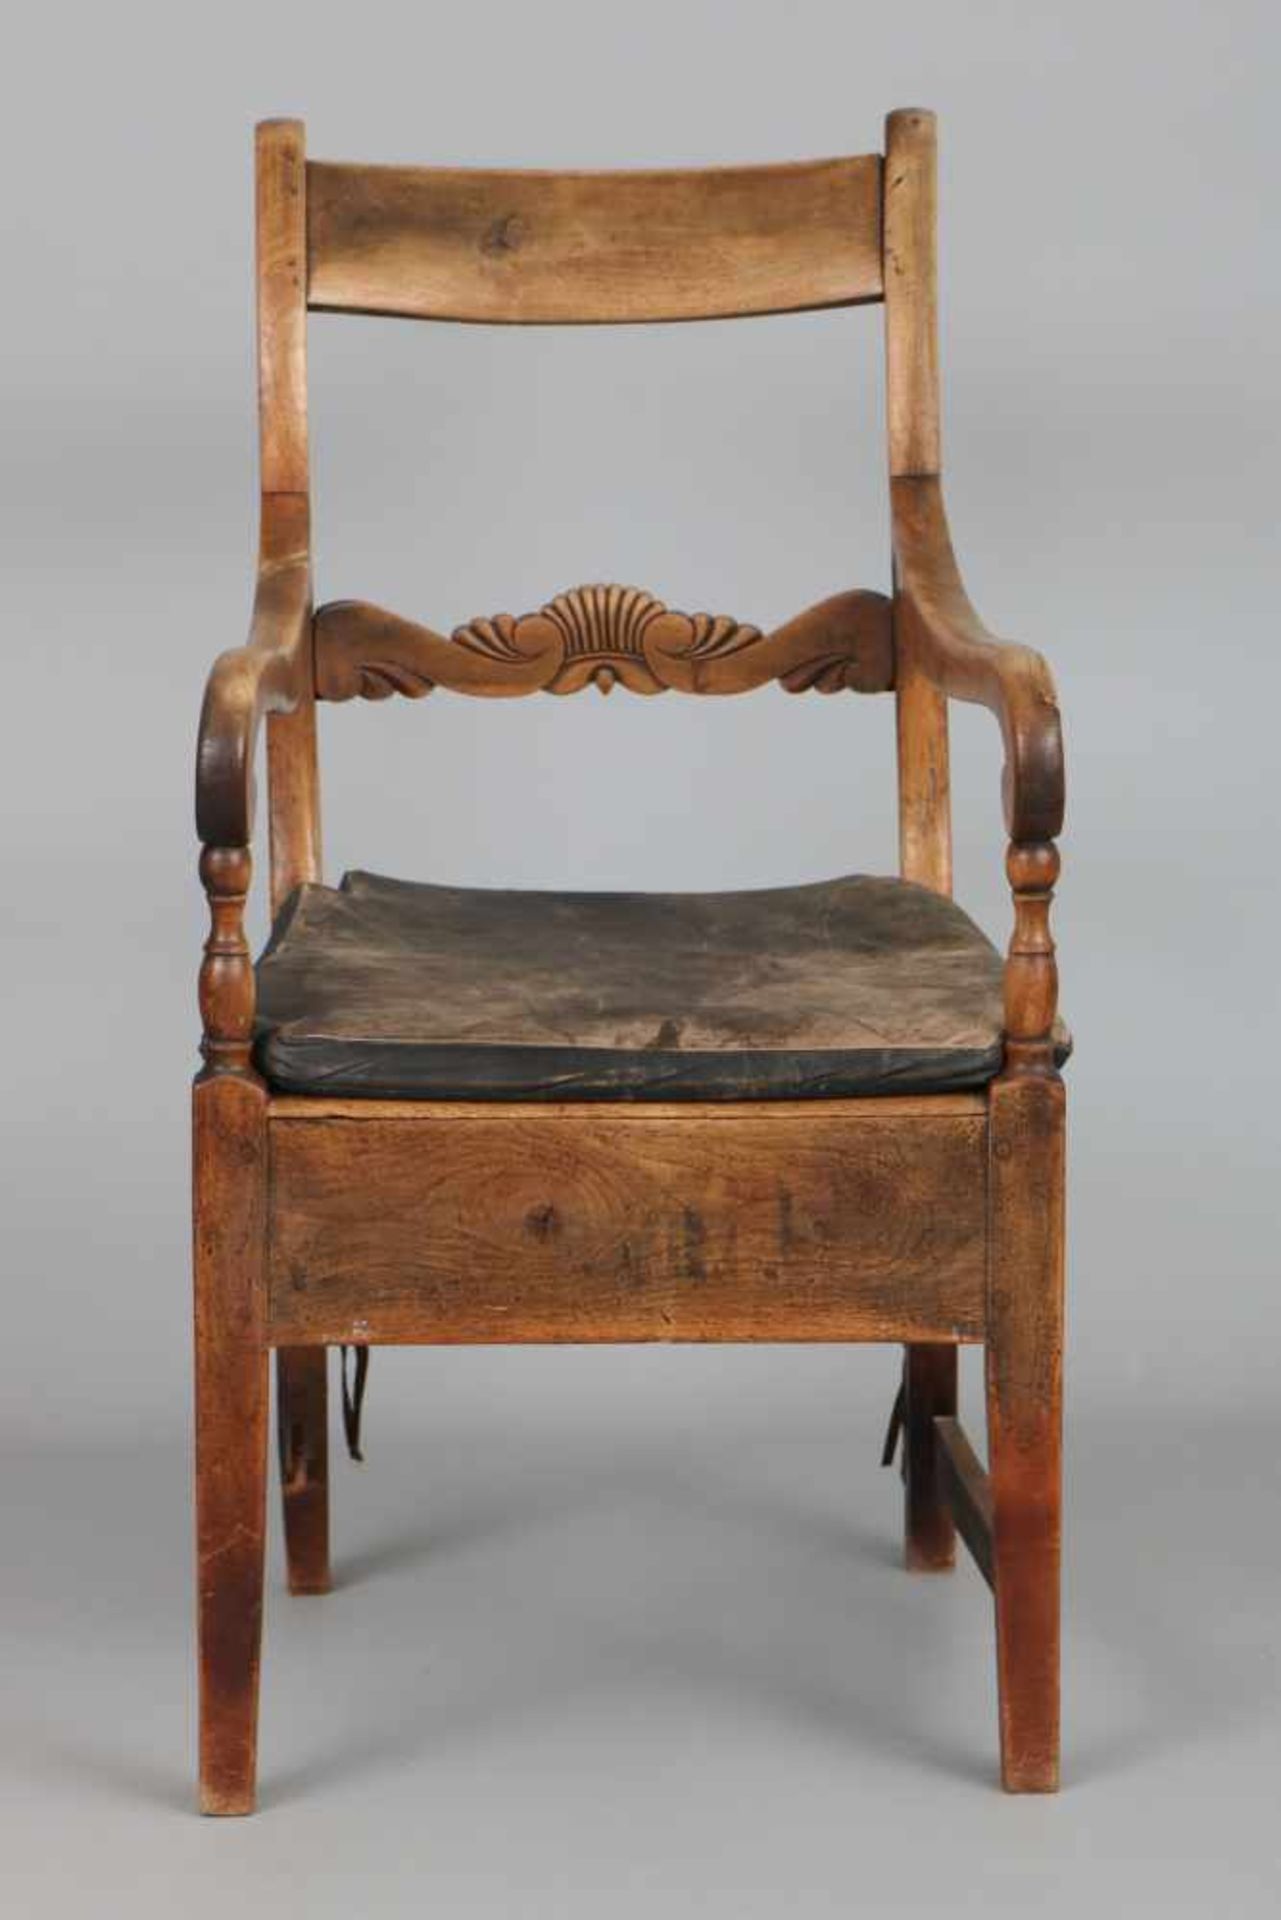 Englischer ArmlehnstuhlMahagoni, 1. Hälfte 19. Jhdt. (George III.), eckige Sitzfläche, 1 - Bild 2 aus 2